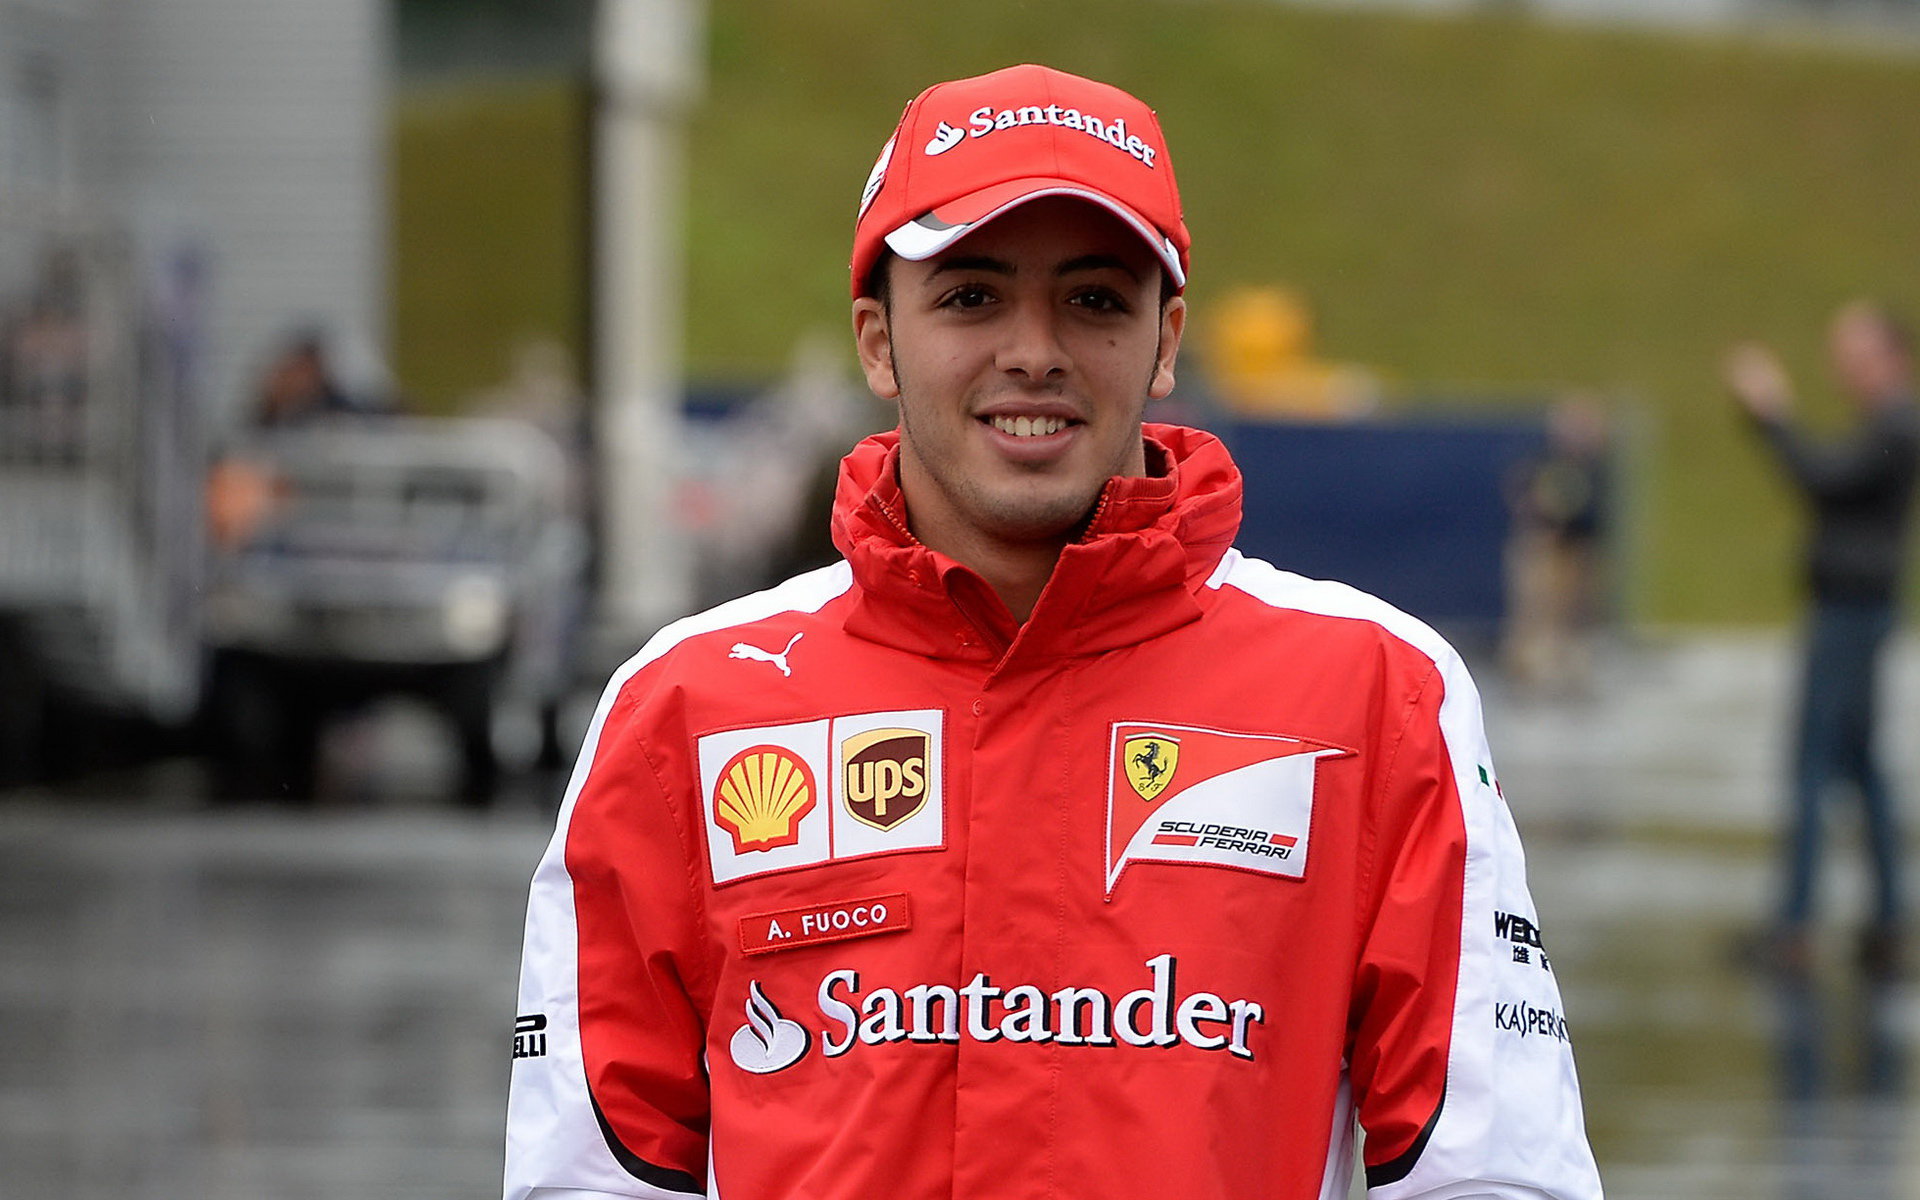 Antonio Fuoco už má s Ferrari zkušenosti